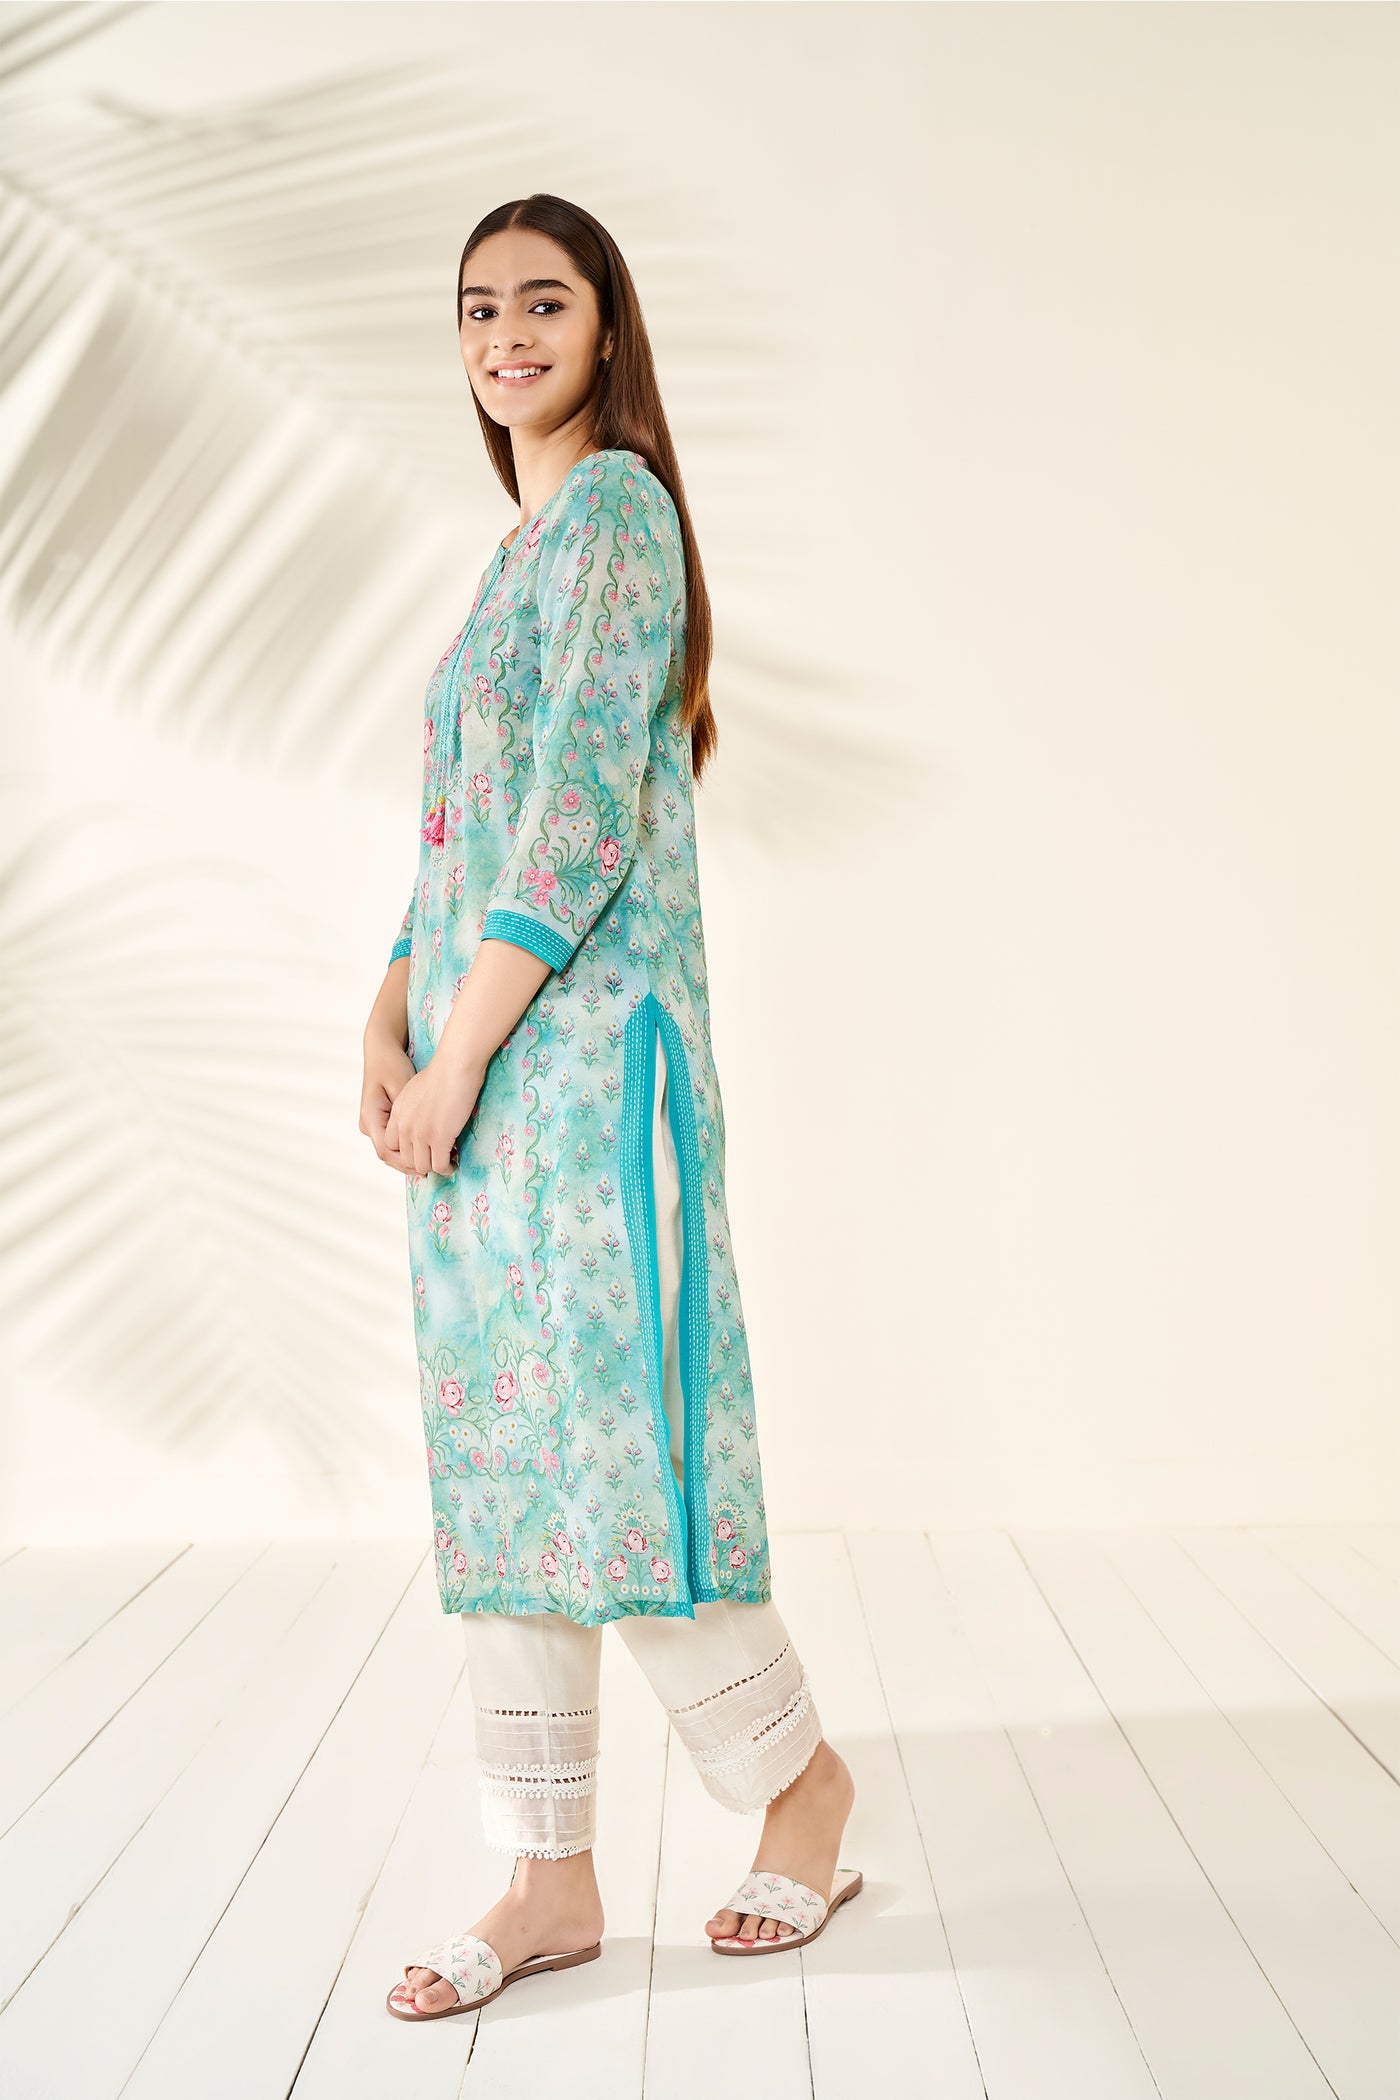 Anita Dongre Netra Kurta Aqua online shopping melange singapore indian designer wear